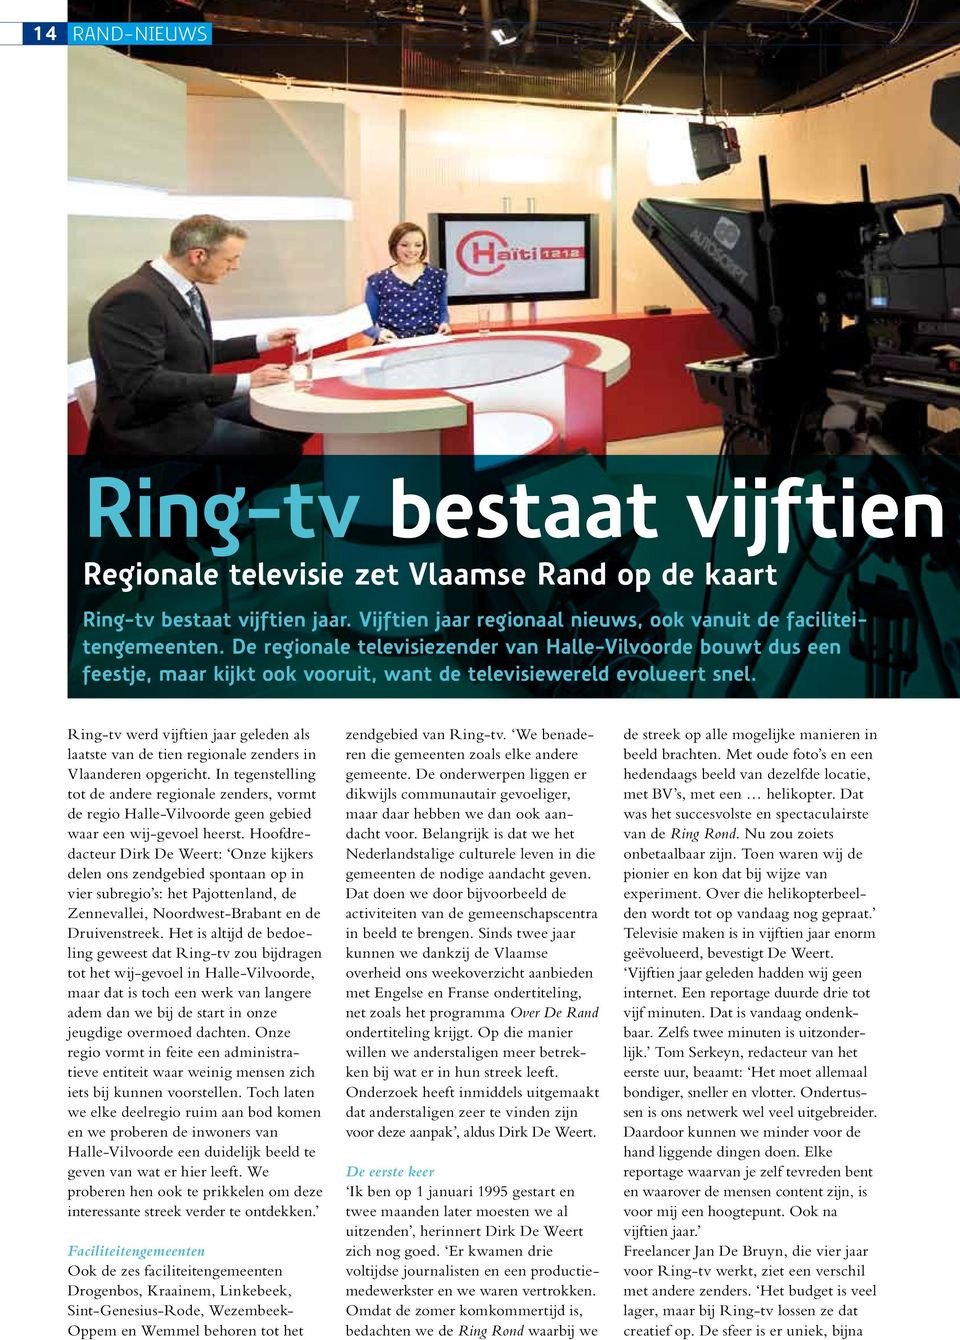 Ring-tv werd vijftien jaar geleden als laatste van de tien regionale zenders in Vlaanderen opgericht.